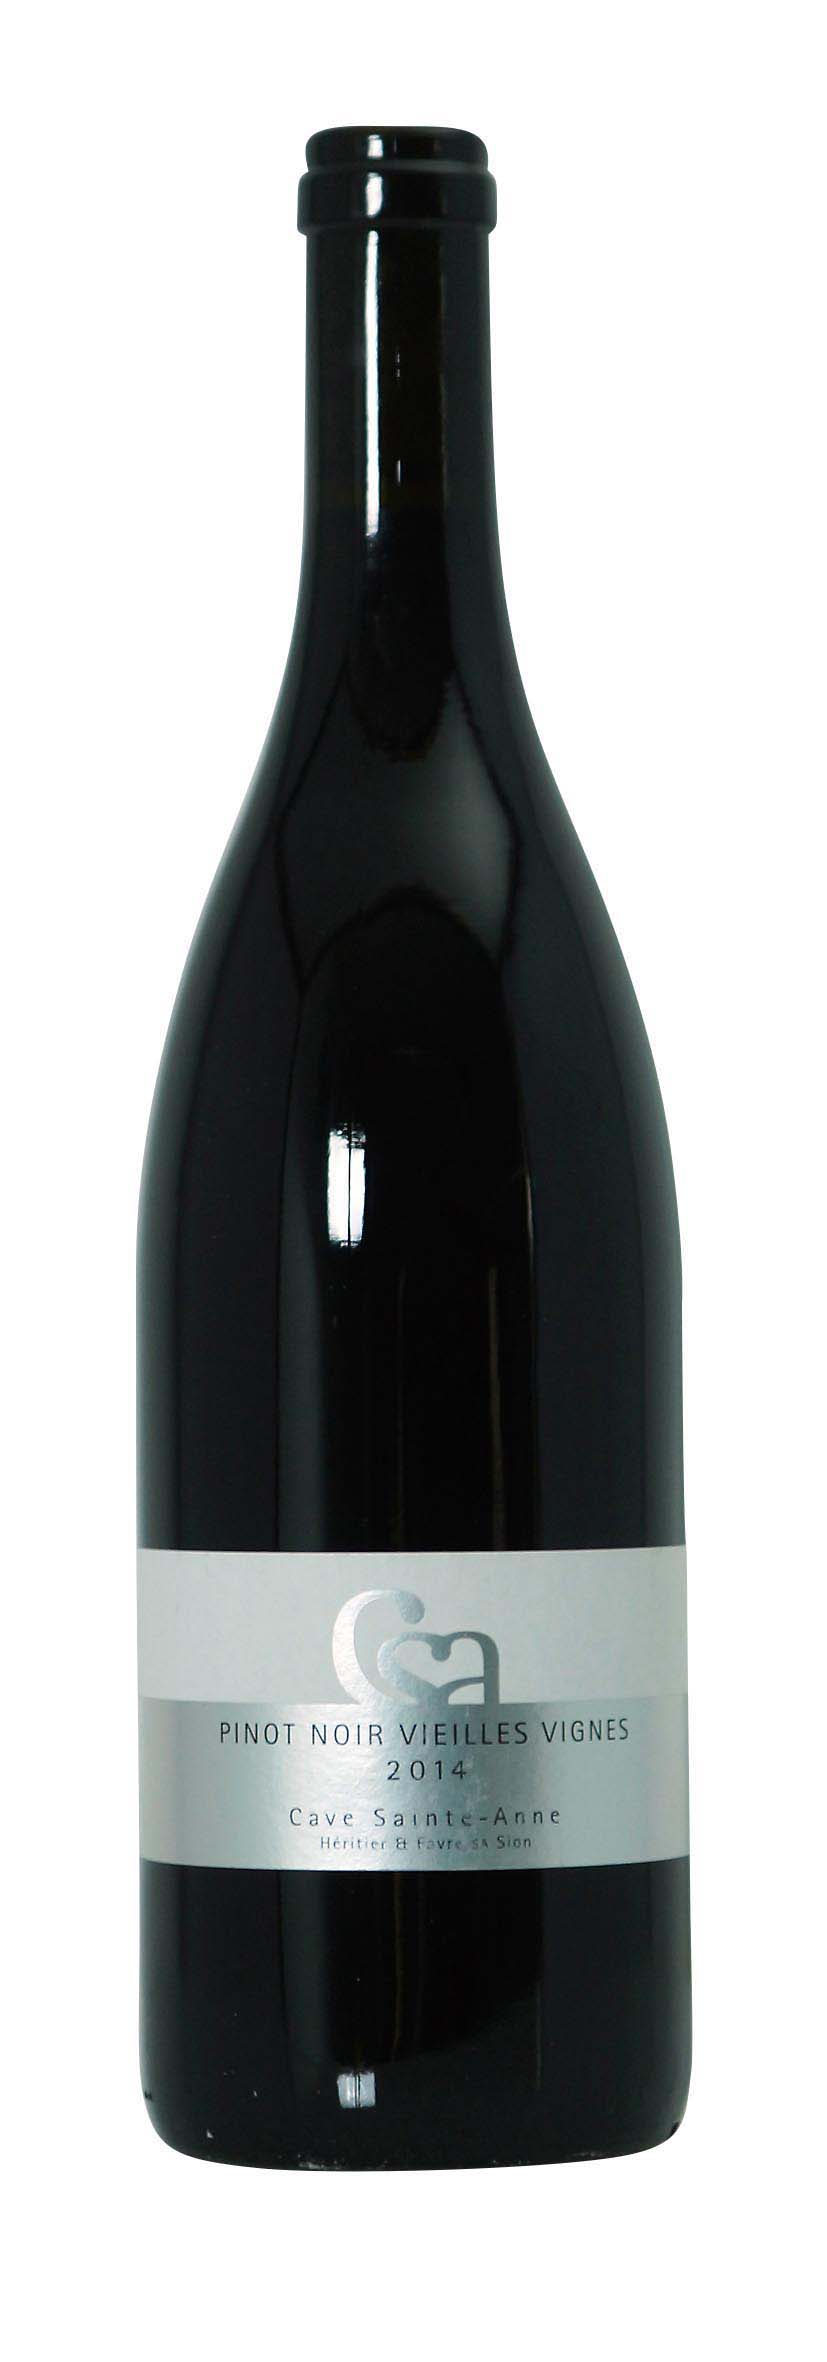 Valais AOC Pinot Noir Vieilles Vignes Cave Sainte-Anne 2014